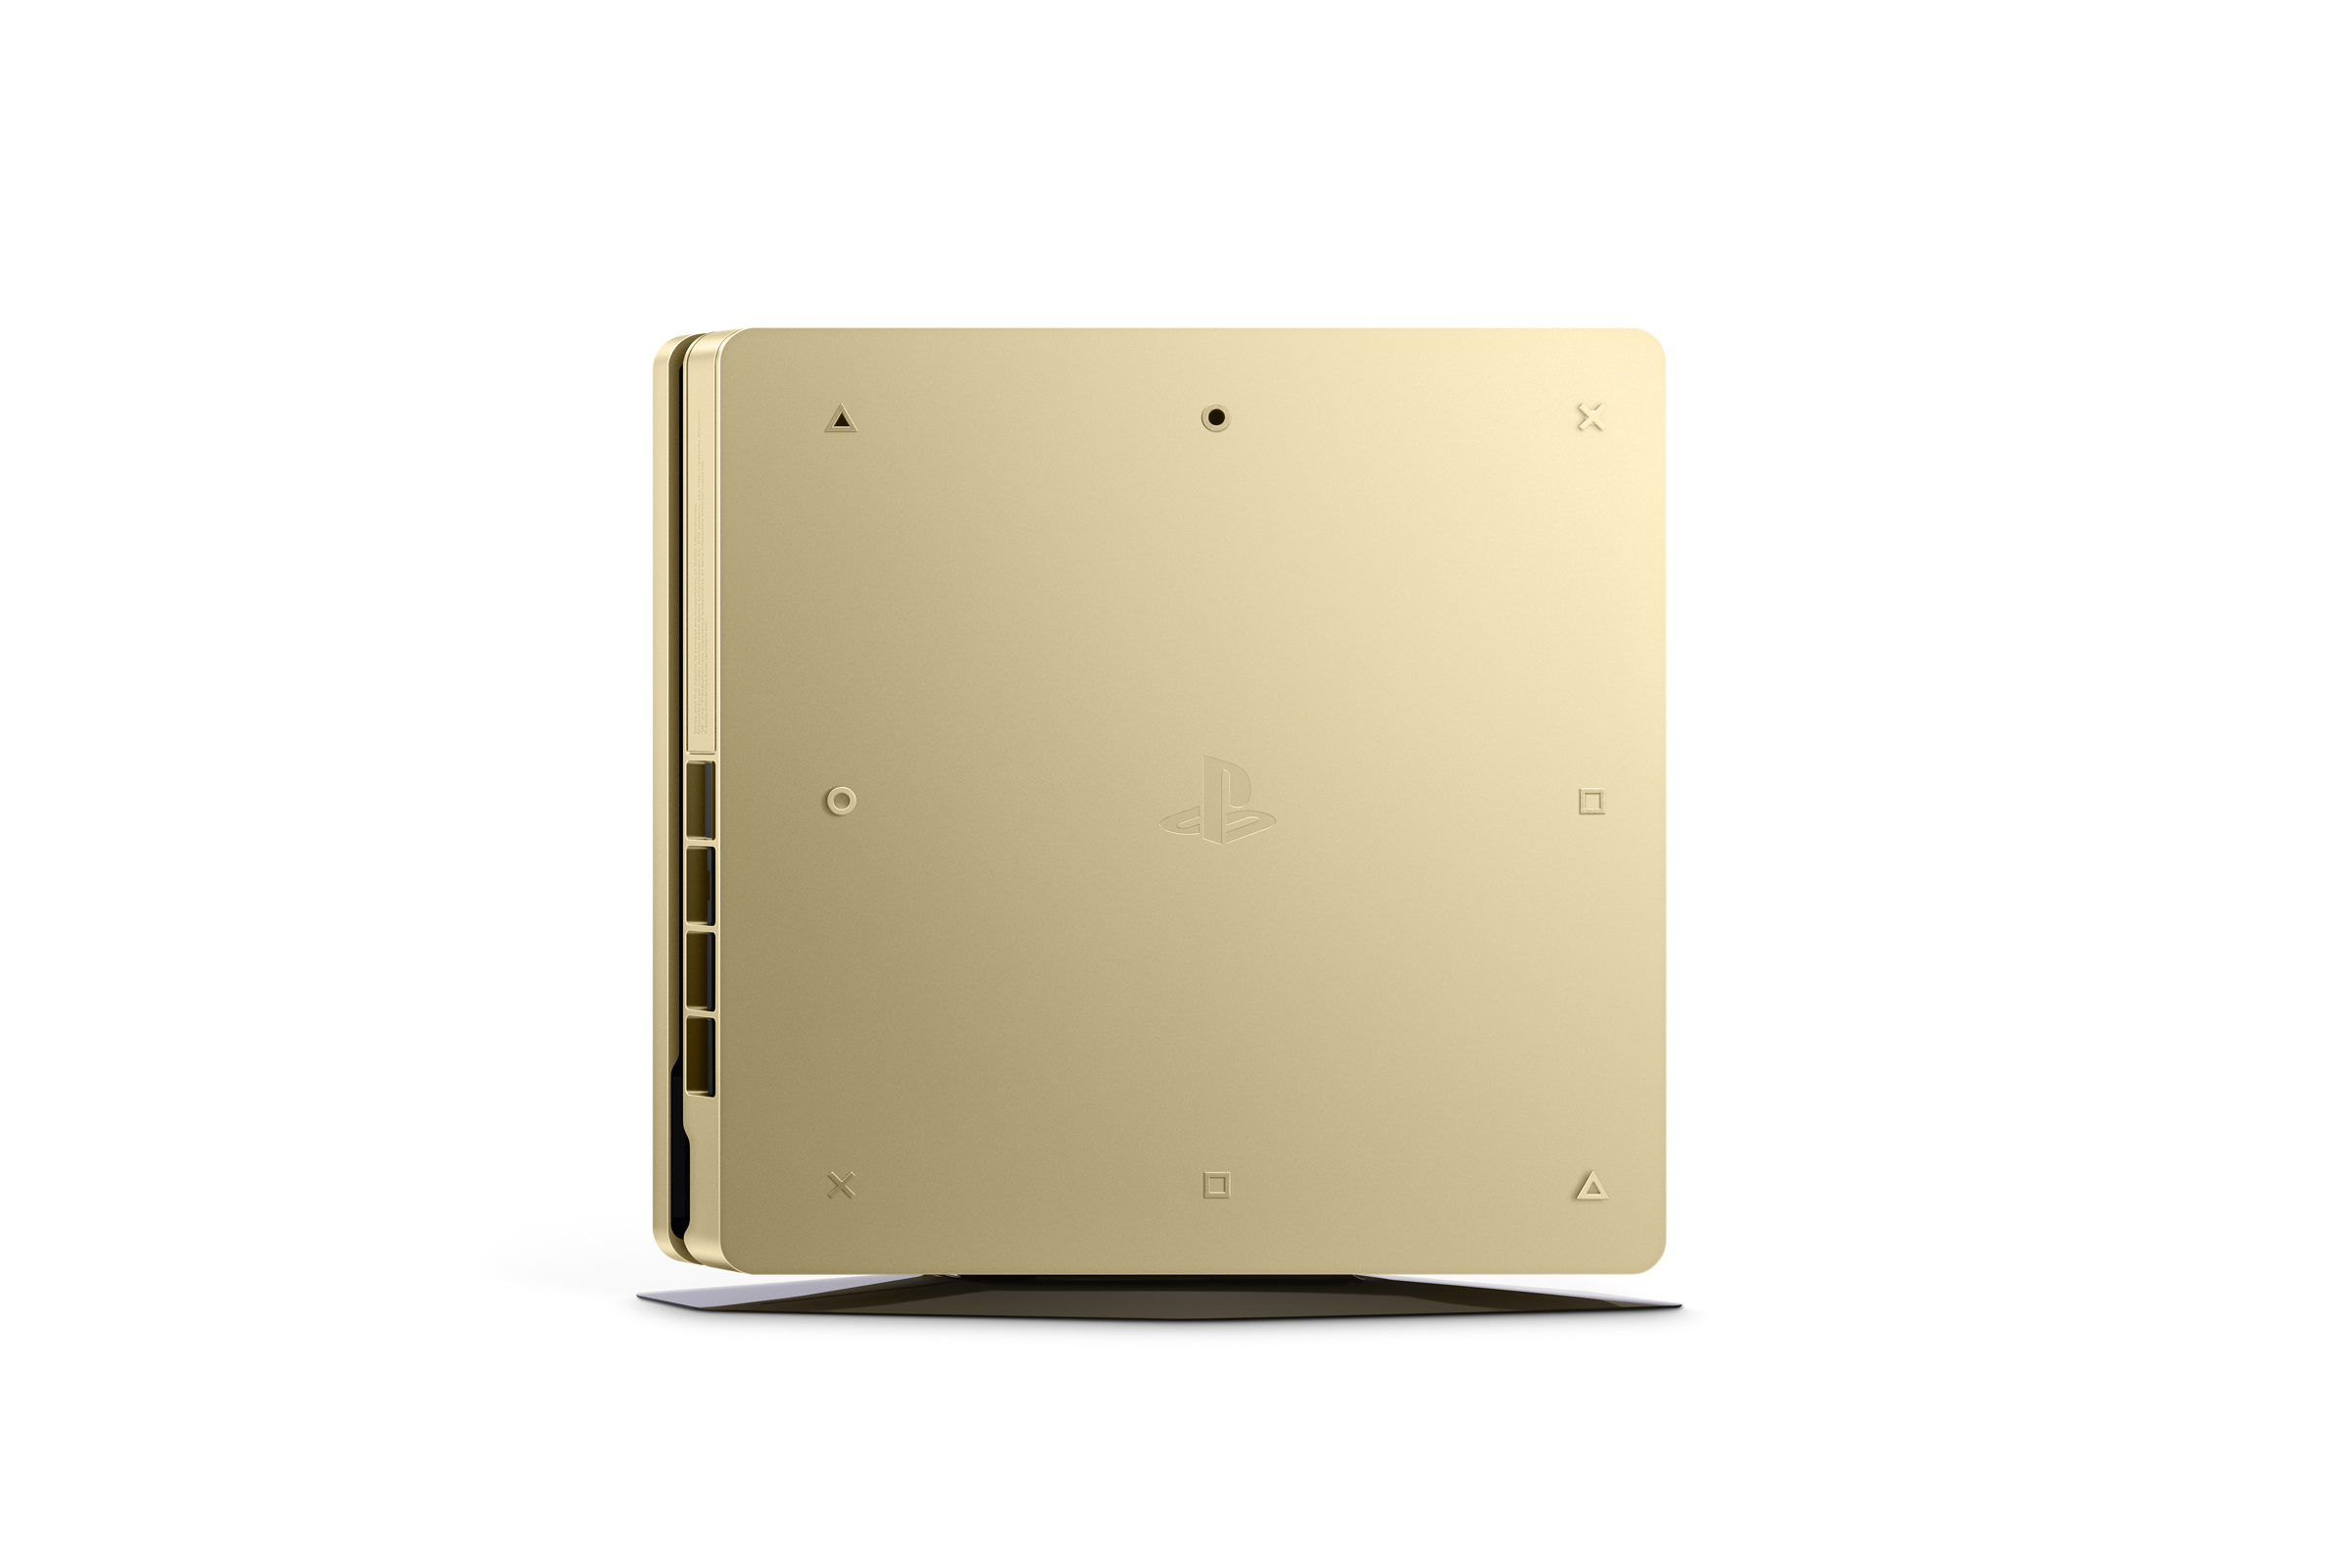 La Playstation 4 Slim Gold et Silver annoncée (9)